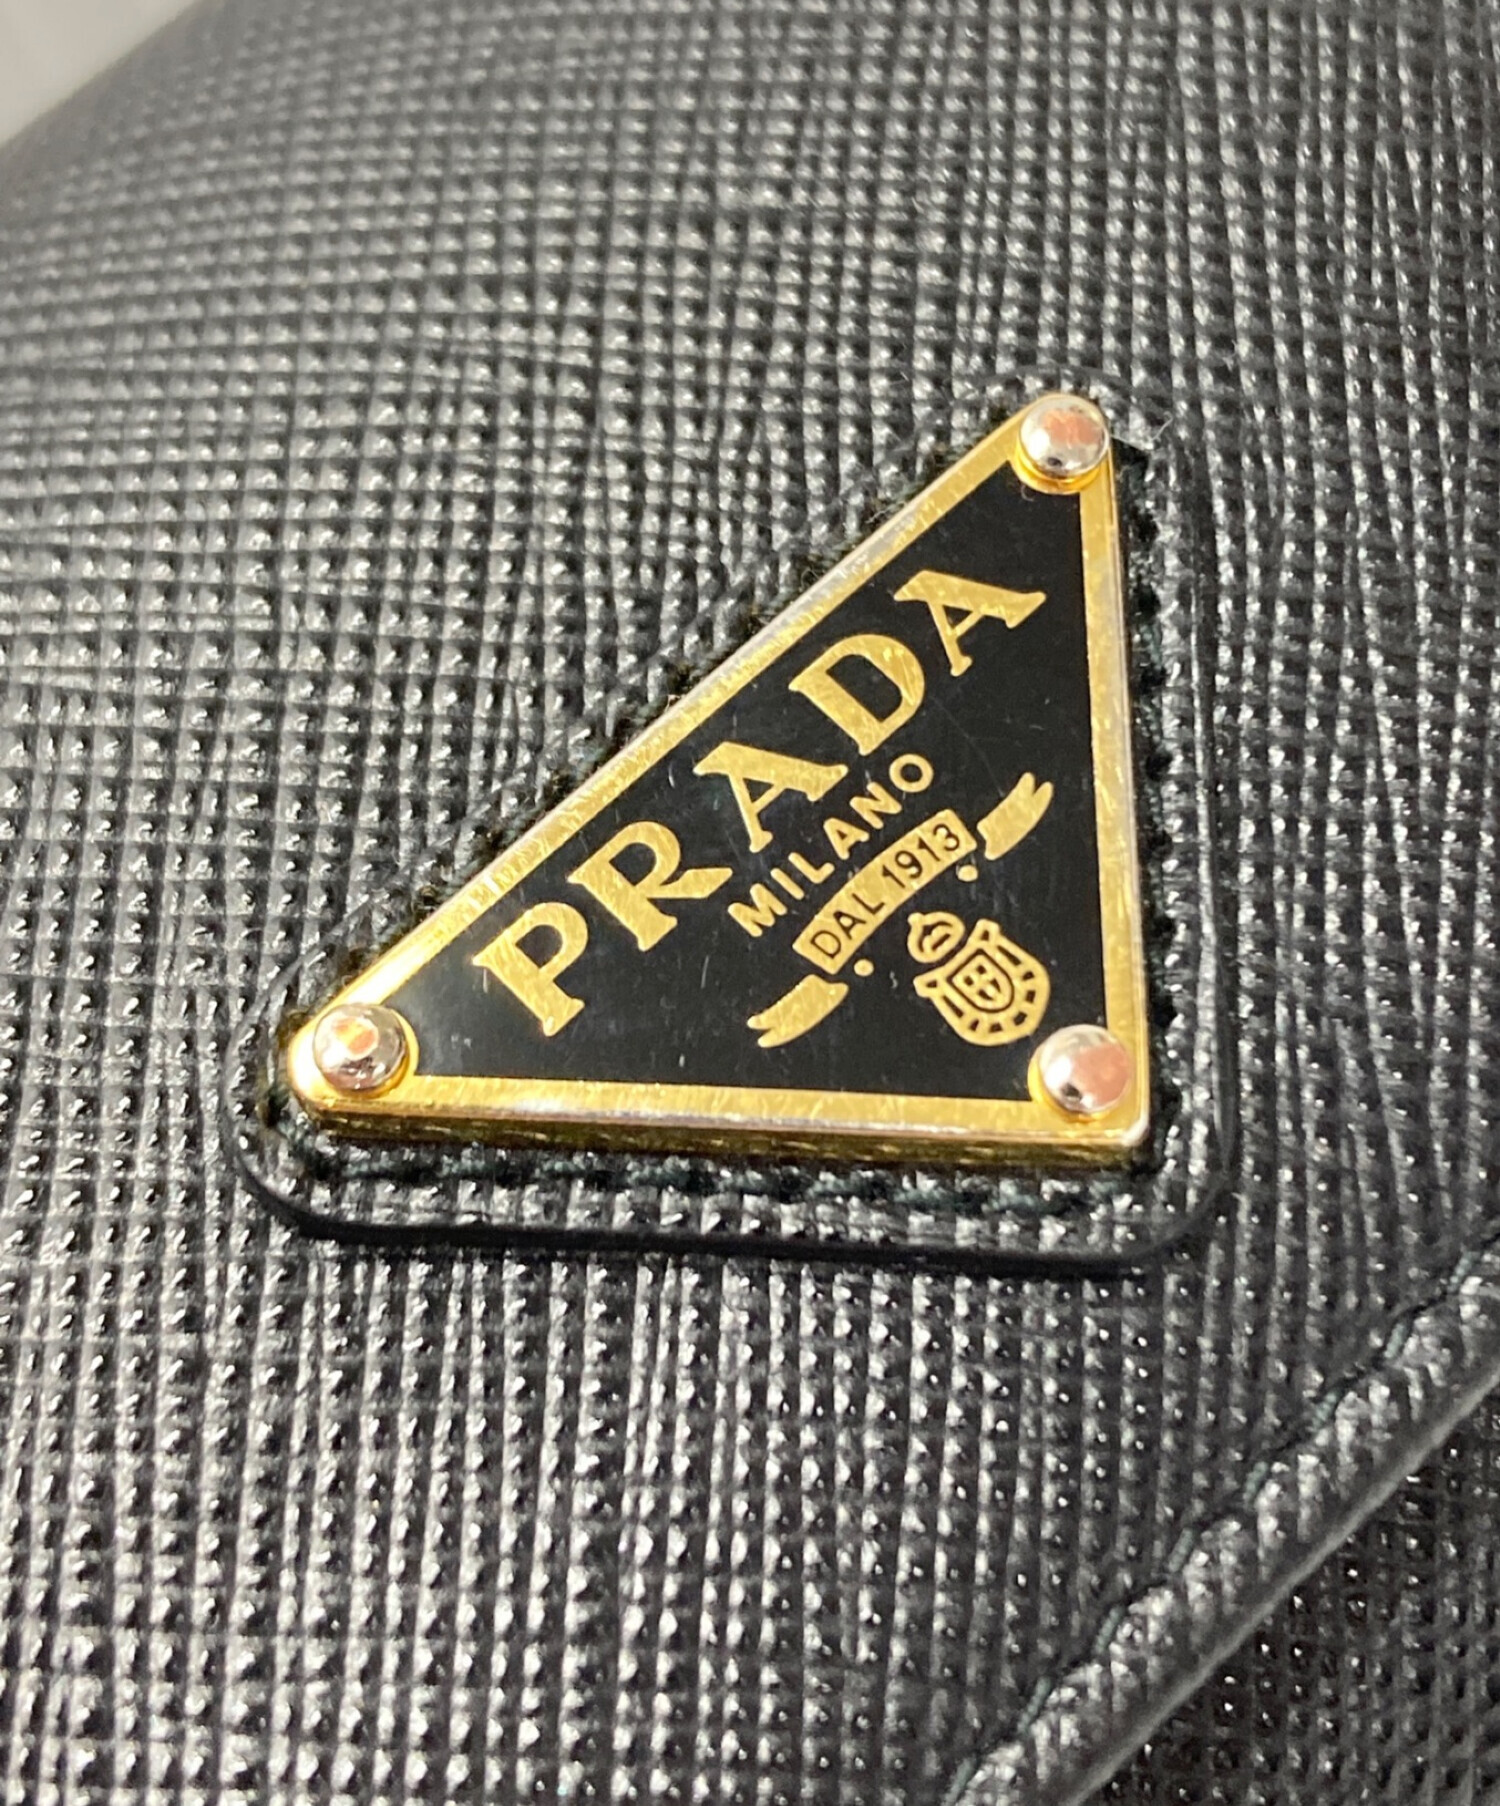 PRADA (プラダ) 三角プレート3つ折り財布 ブラック